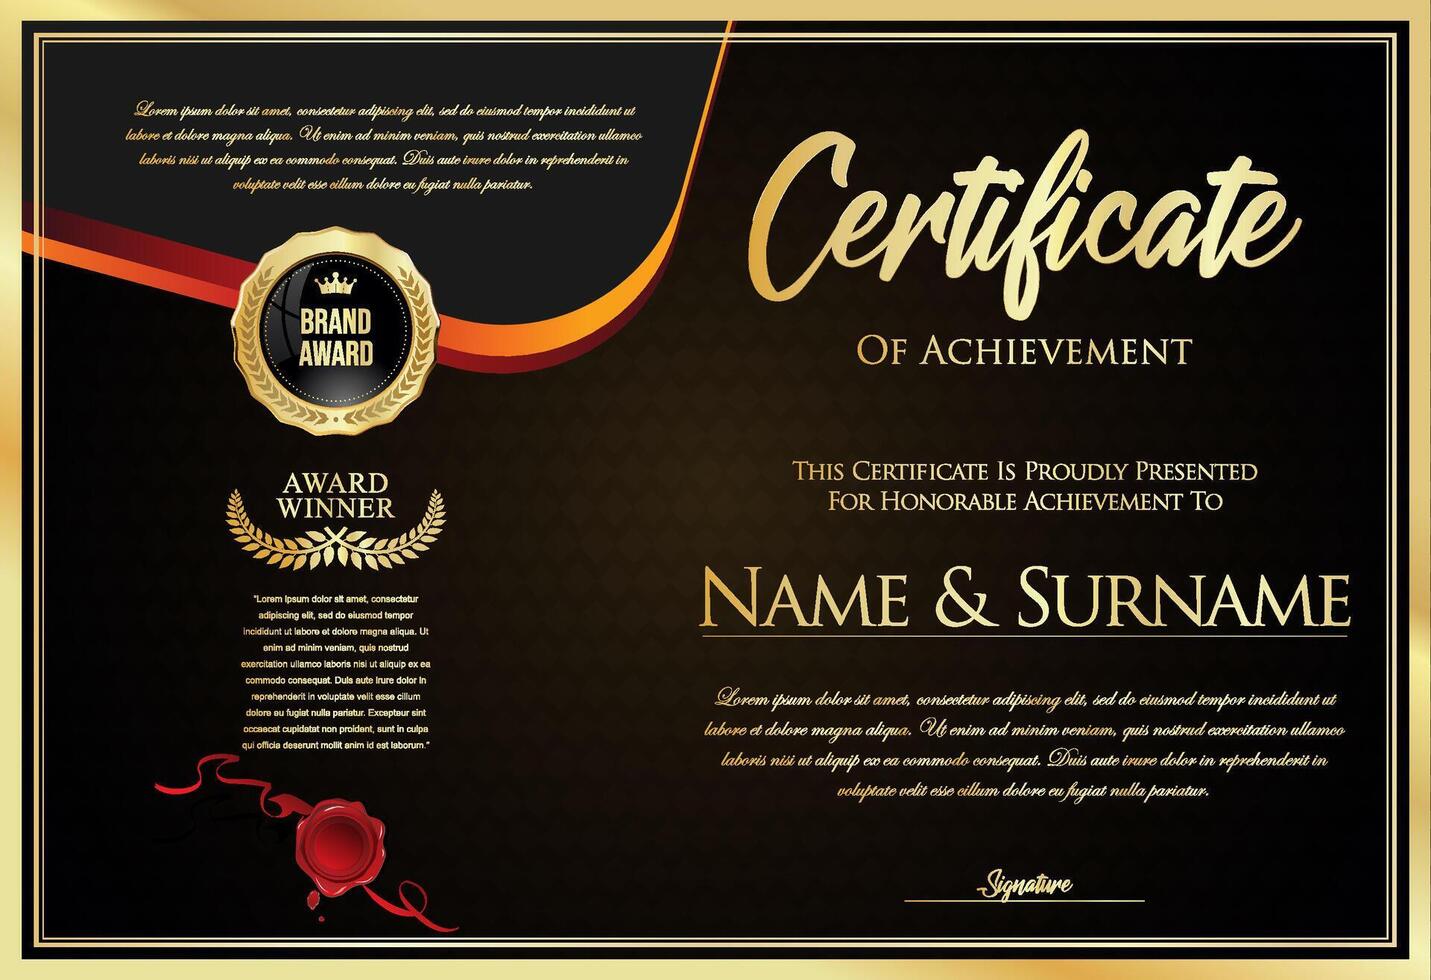 certificaat met gouden zegel en kleurrijk ontwerp grens vector